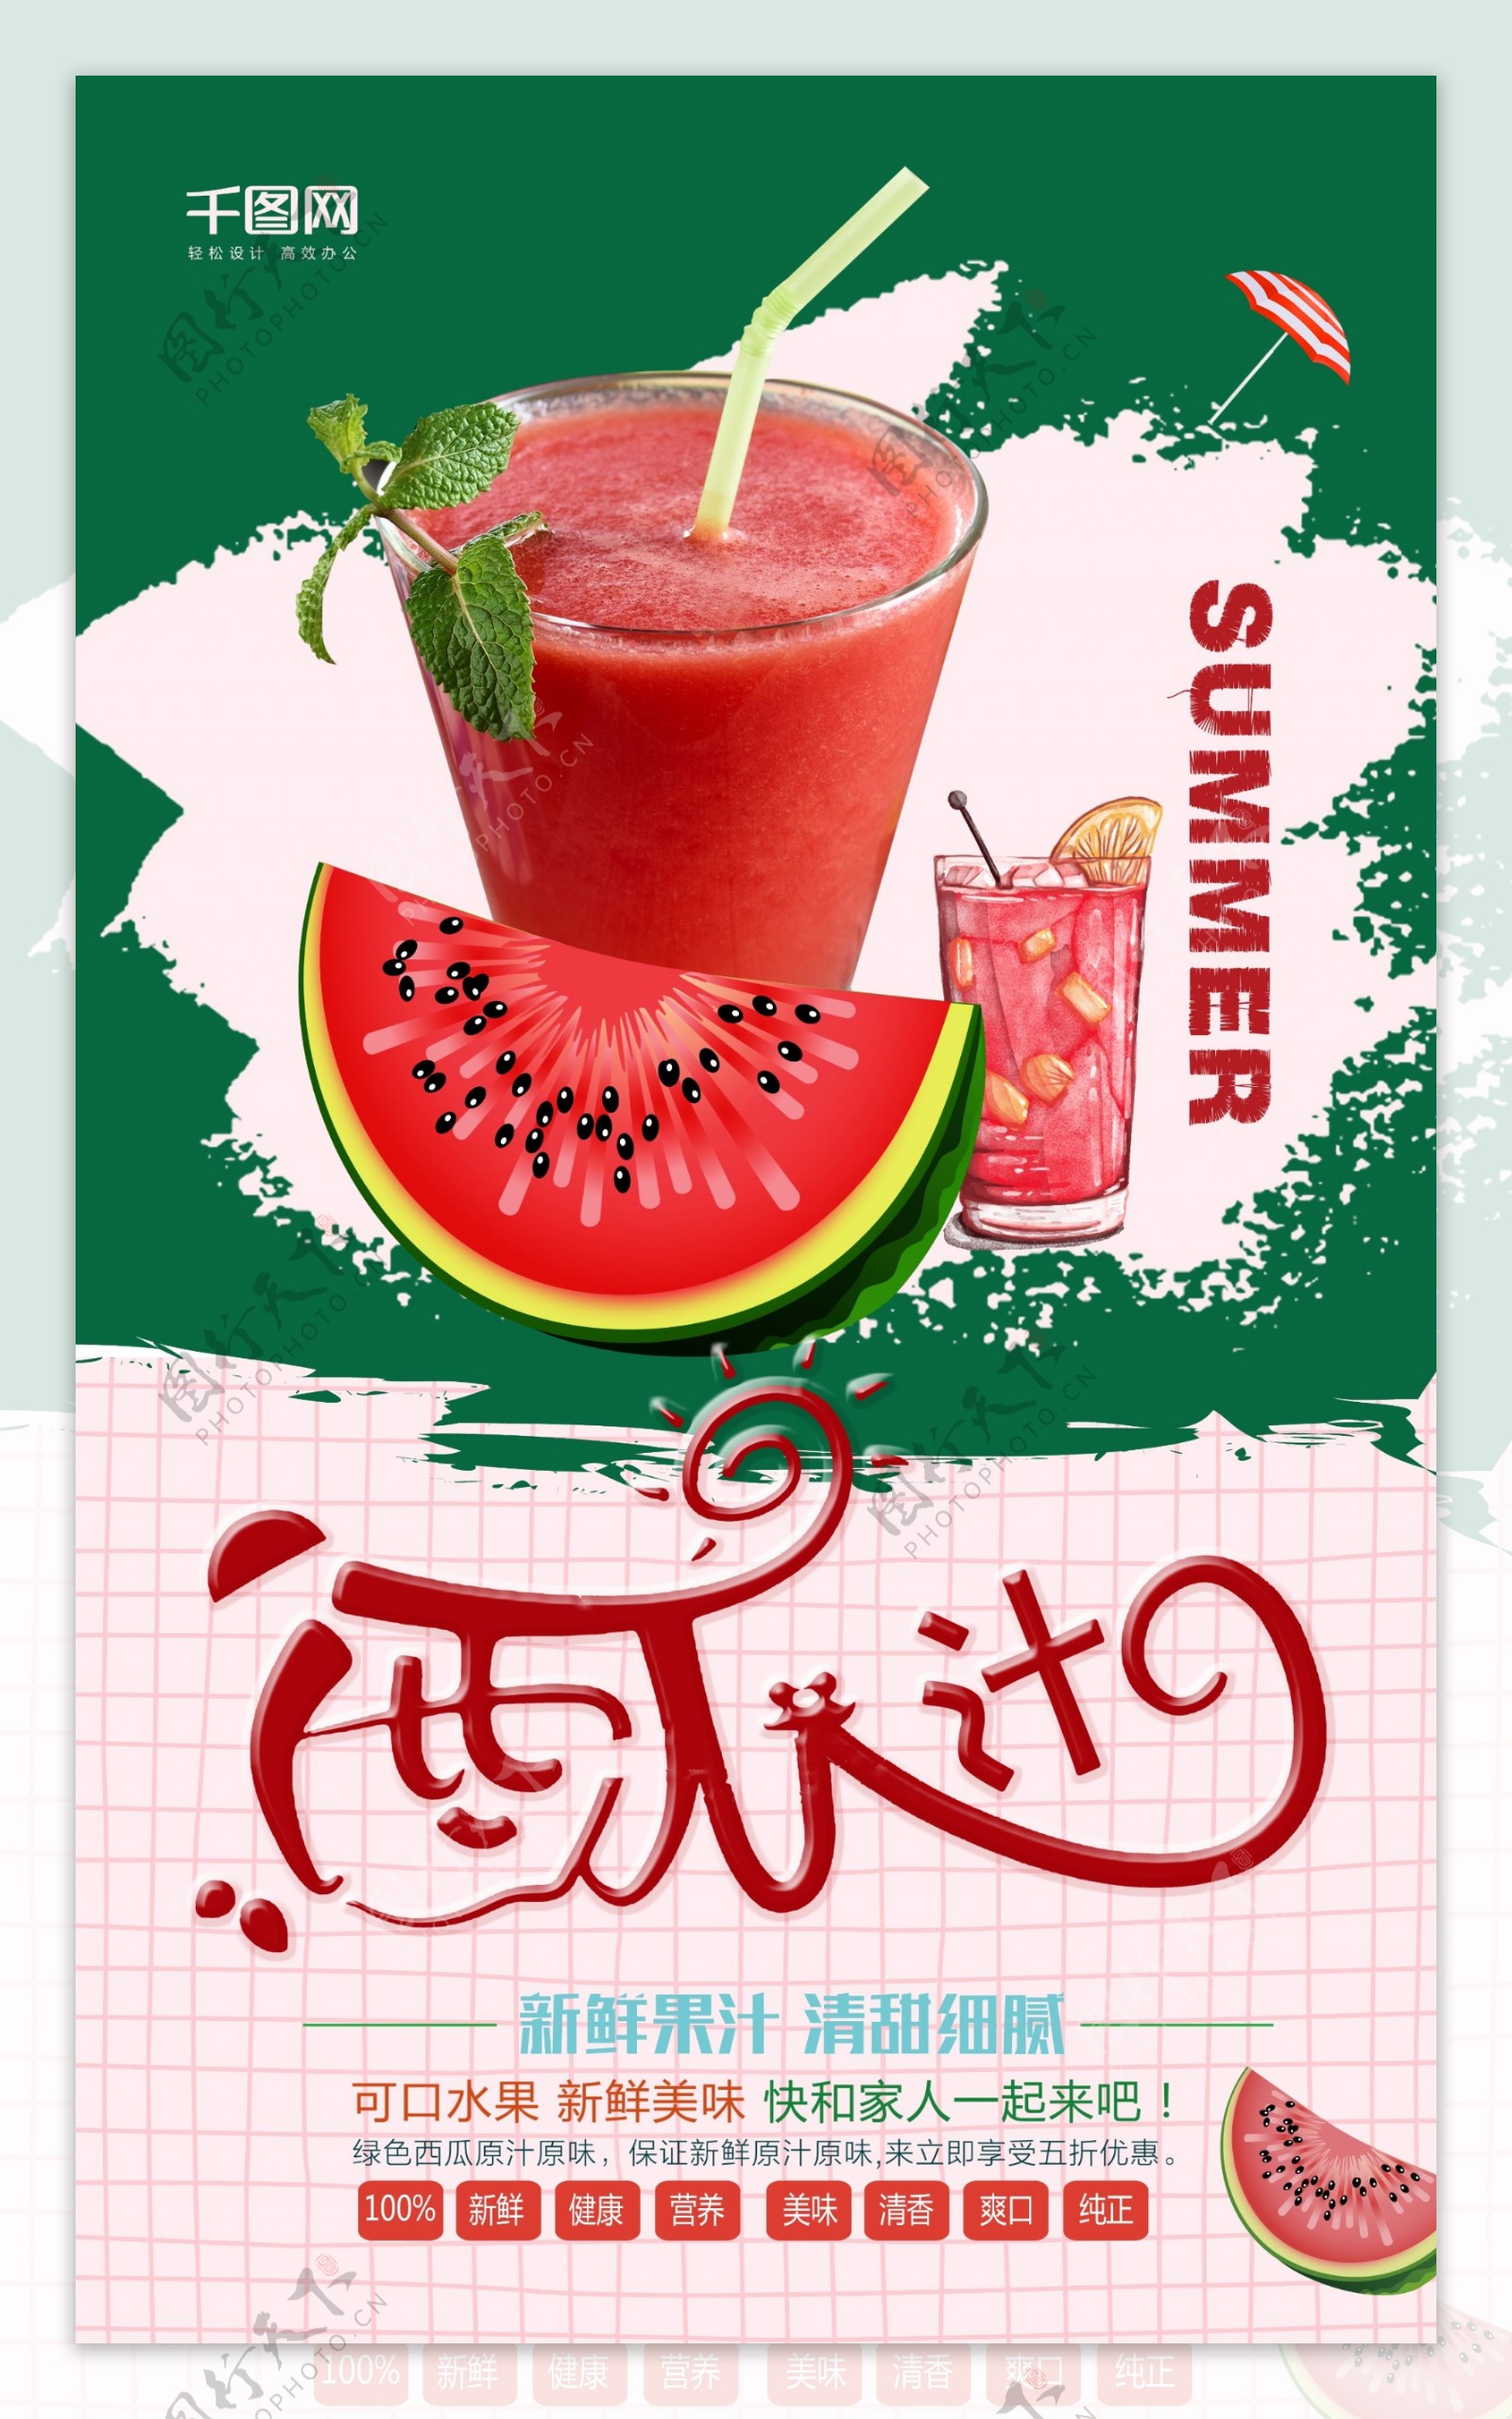 创意夏季西瓜汁水果海报